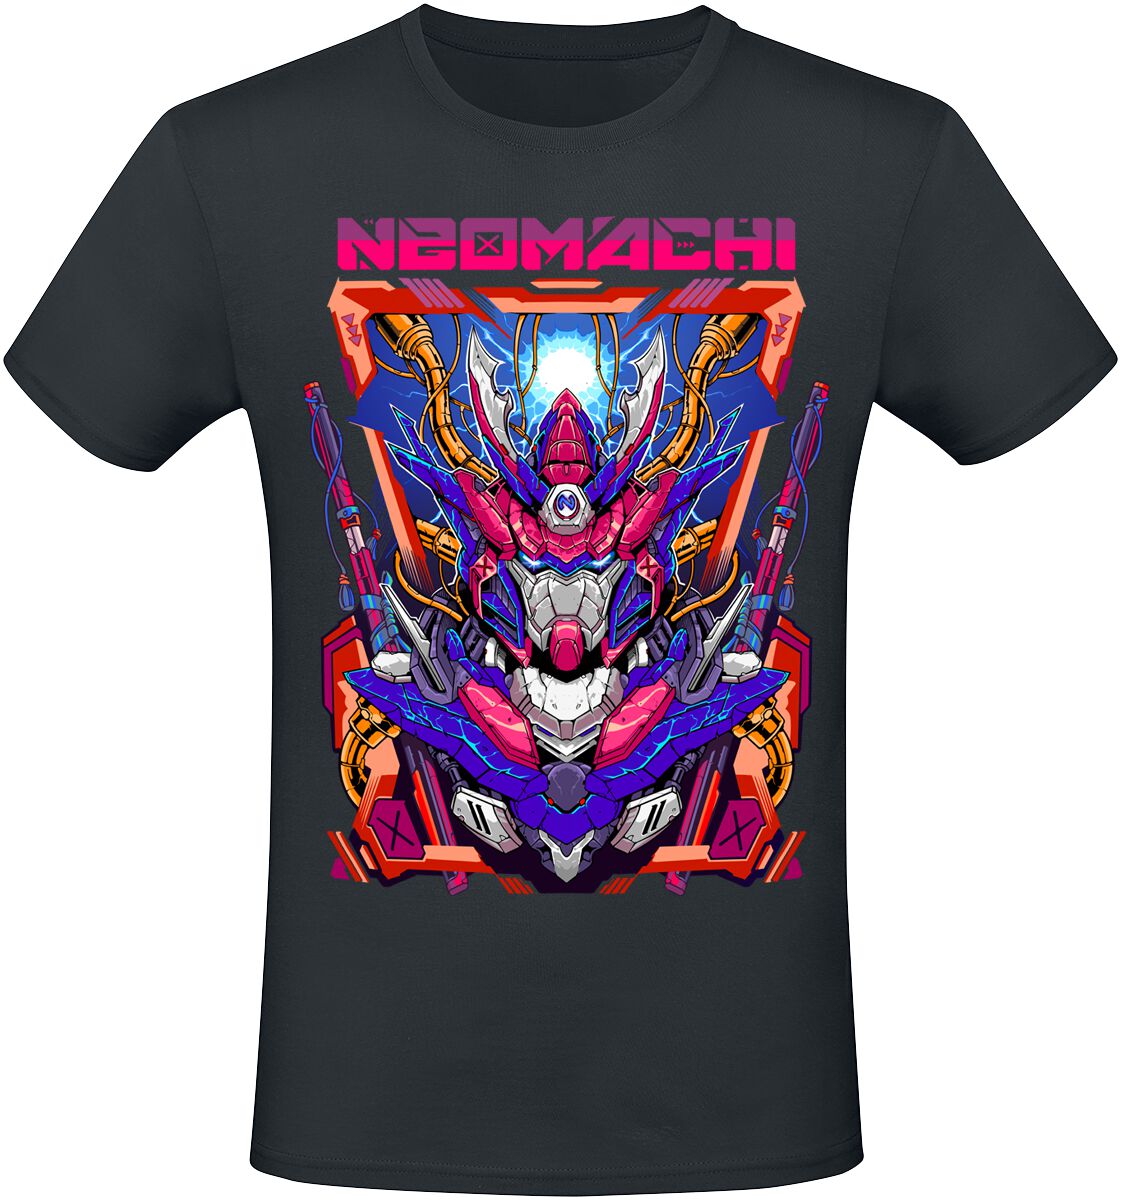 NEOMACHI - Gaming T-Shirt - MECHA - S bis XXL - für Männer - Größe XXL - schwarz  - EMP exklusives Merchandise!